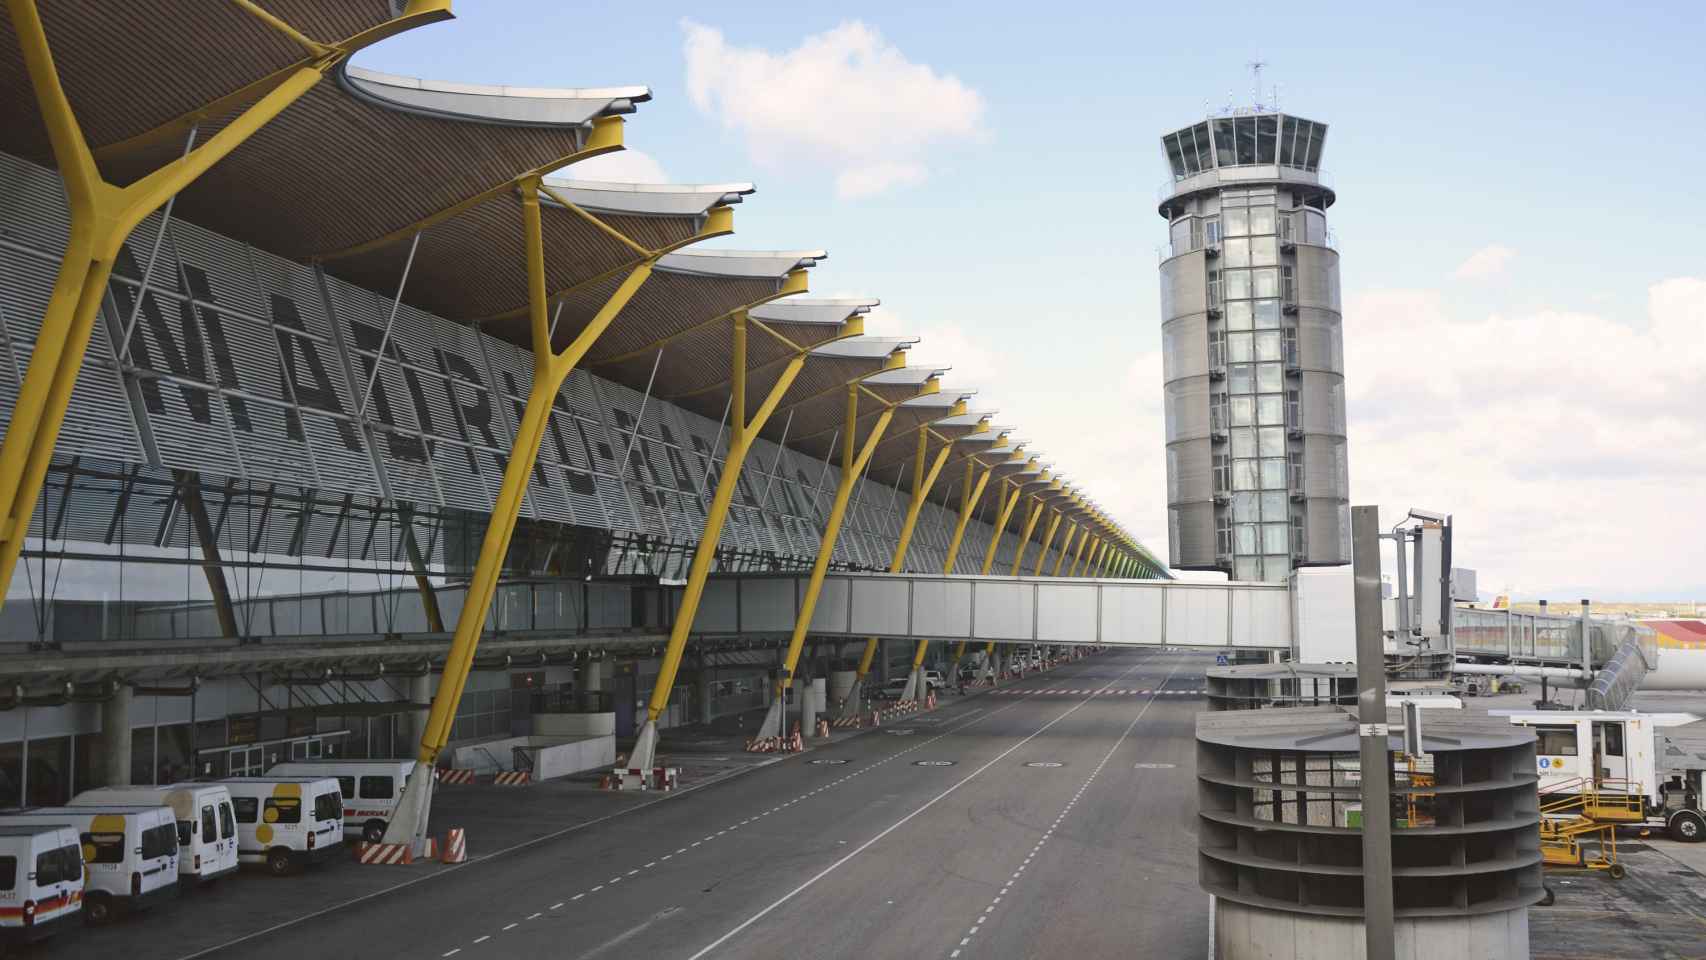 Las obras que están ocasionando los retrasos en el aeropuerto de Barajas comenzaron el 1 de marzo.